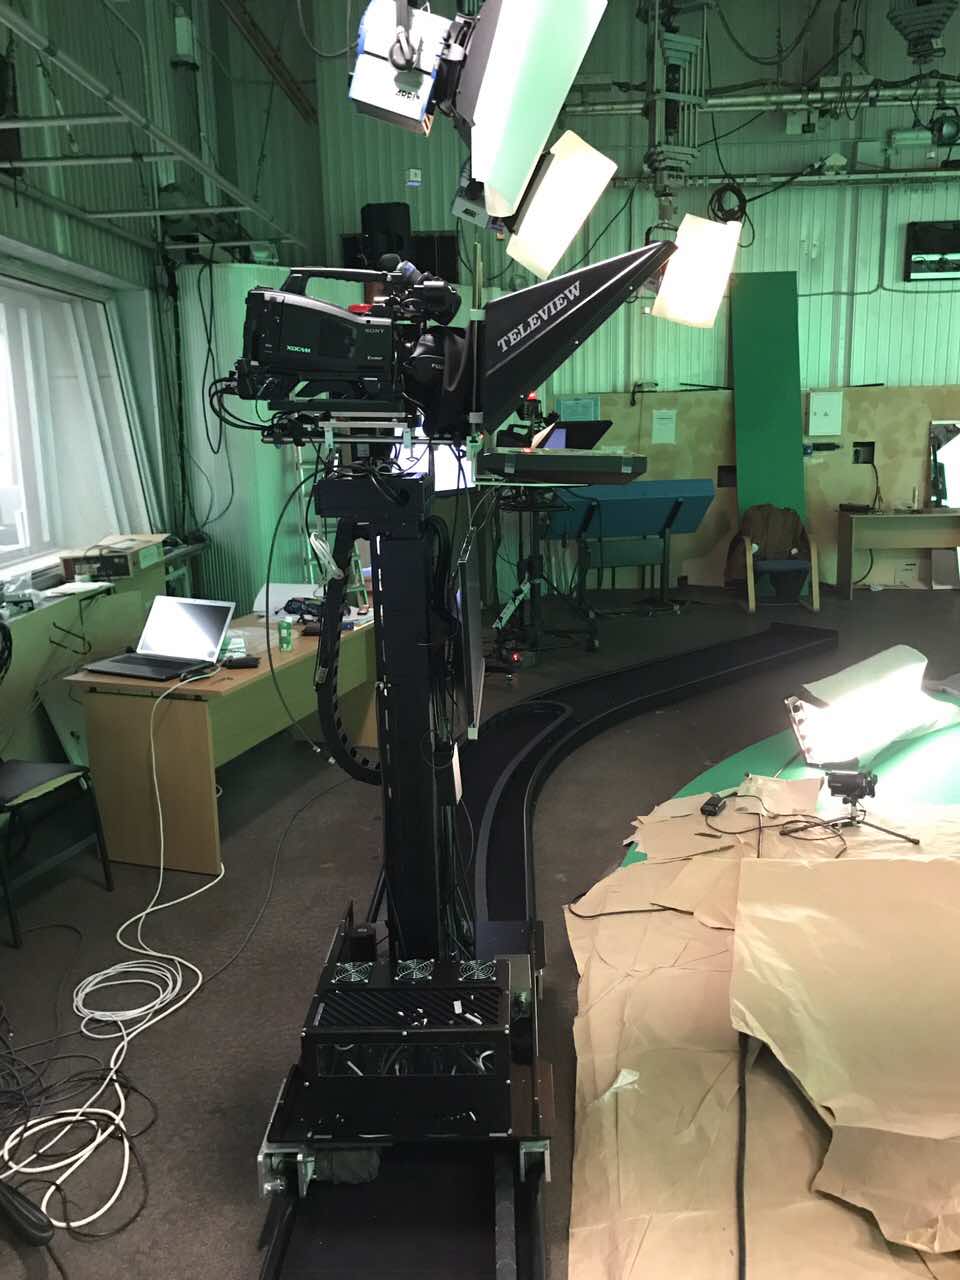 Специалисты ITDILAB разработали съемочной комплекс на роботизированная тележке для студии " Россия 24". Данный комплекс позволяет вести эфиры максимального качества с возможностью управления камерой по вертикали и горизонтали